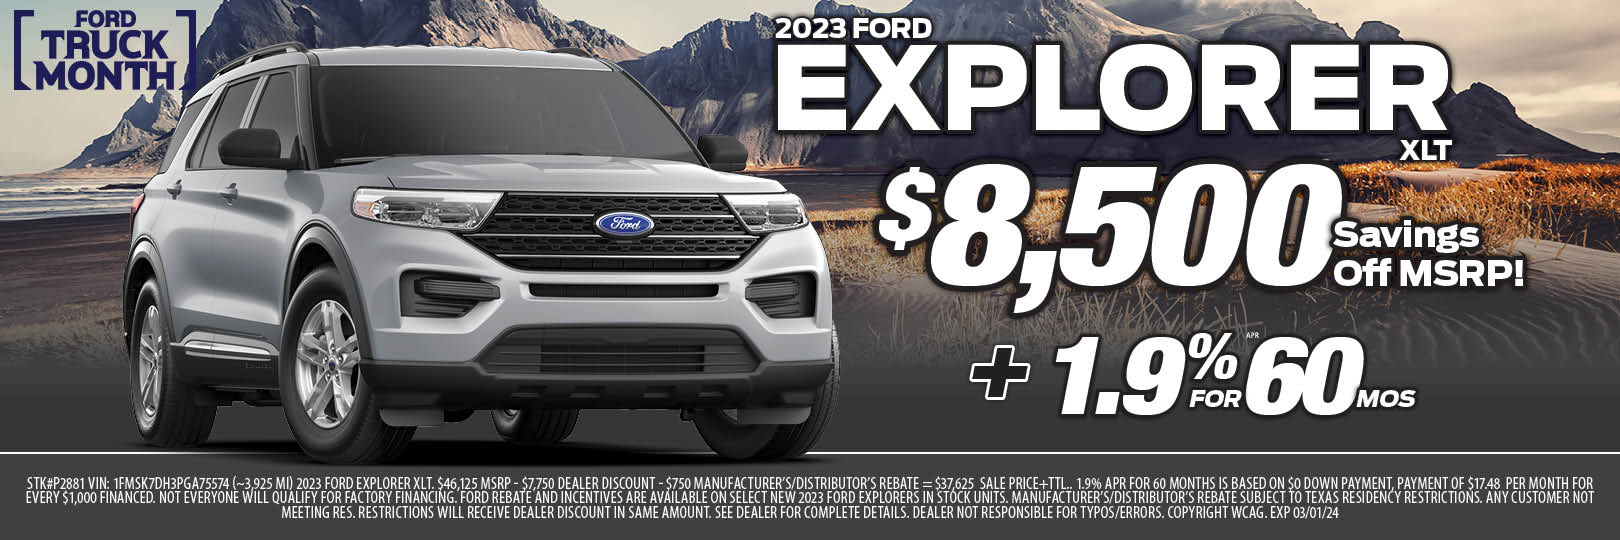 Planet Ford New Explorer Savings Houston Dealer